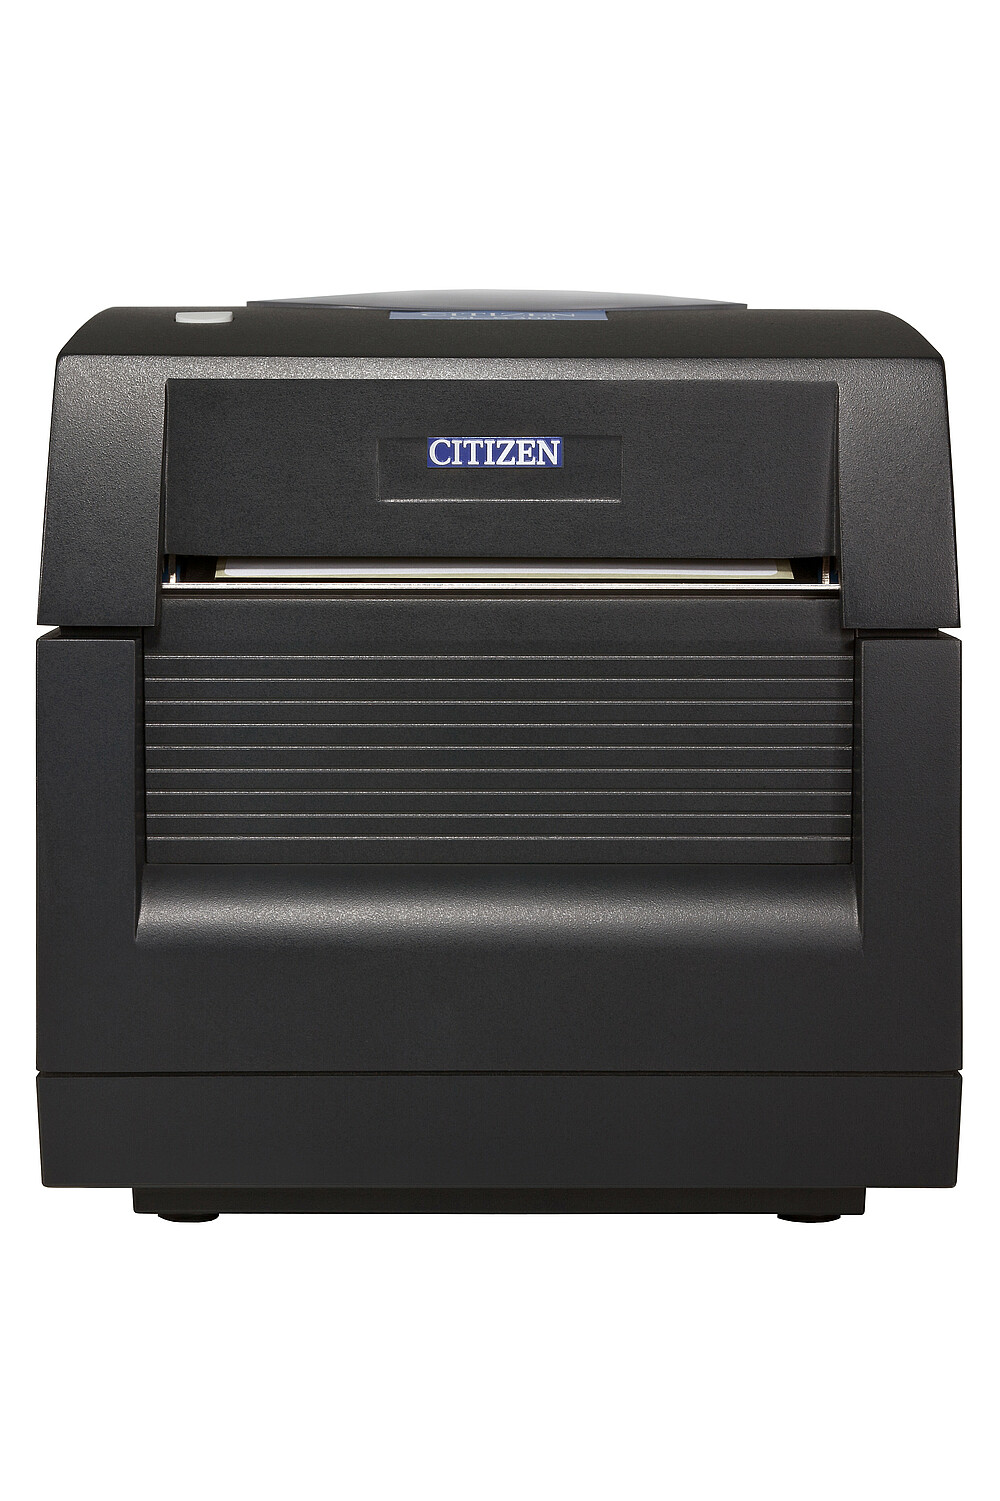 Citizen Label Printer CL-S300 Front